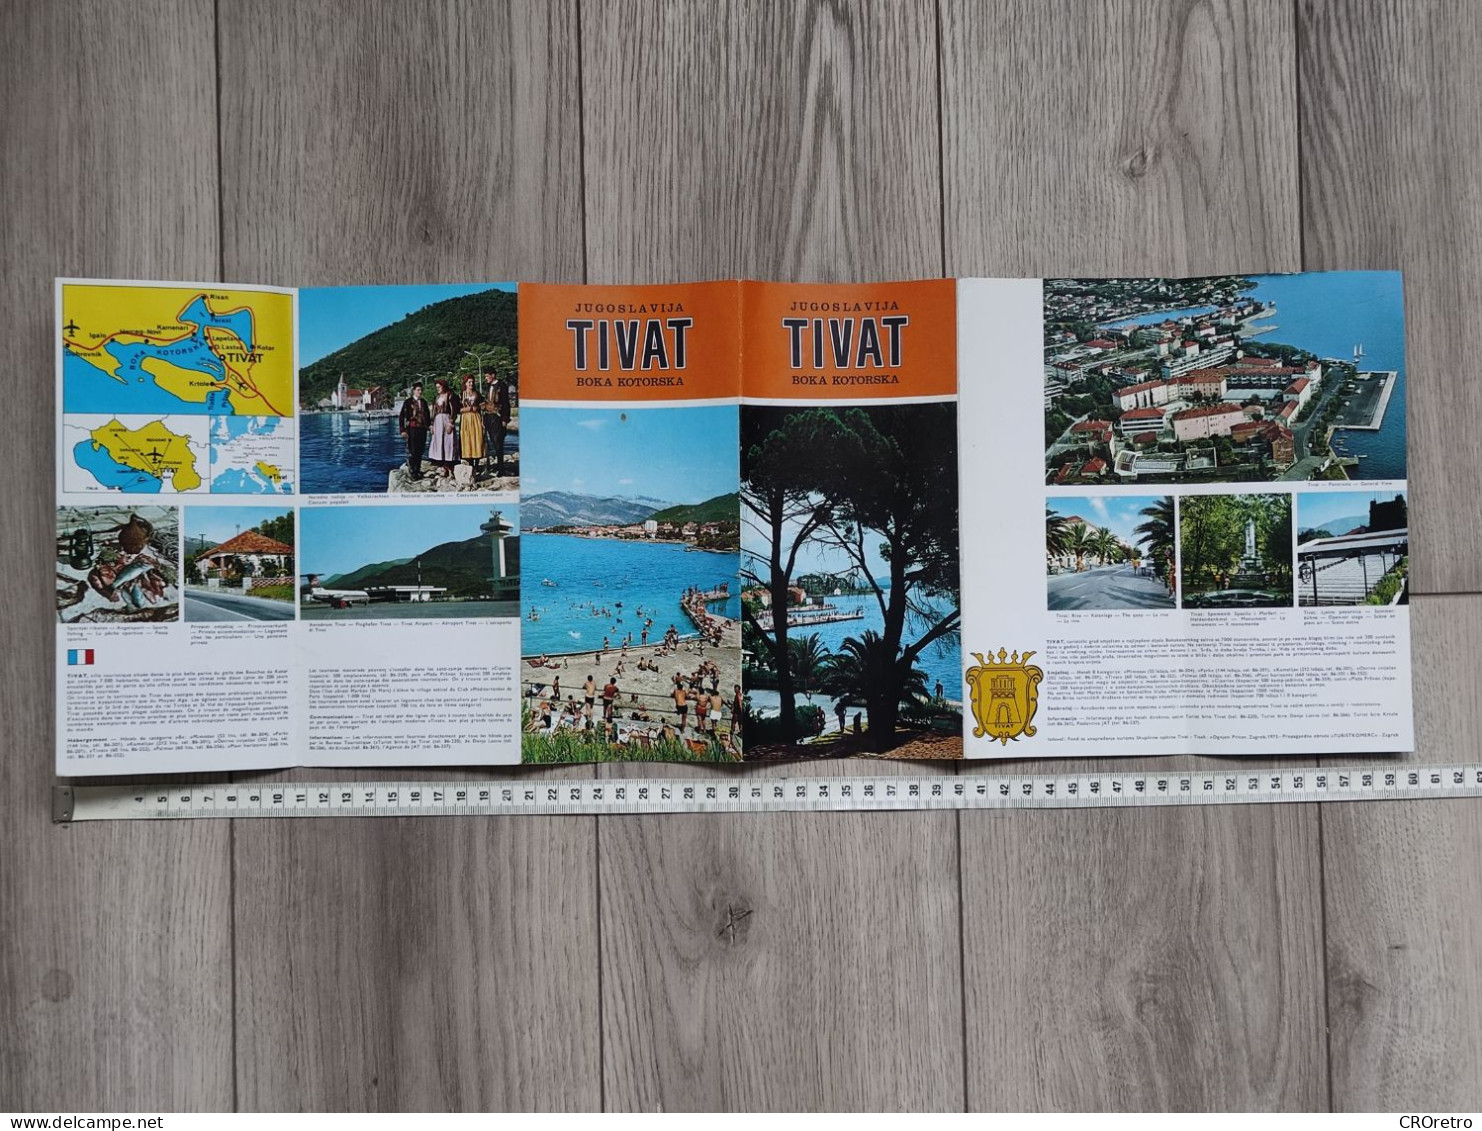 TIVAT / BOKA KOTORSKA - MONTENEGRO (ex Yugoslavia), Vintage Tourism Brochure, Prospect, Guide (pro3) - Dépliants Touristiques